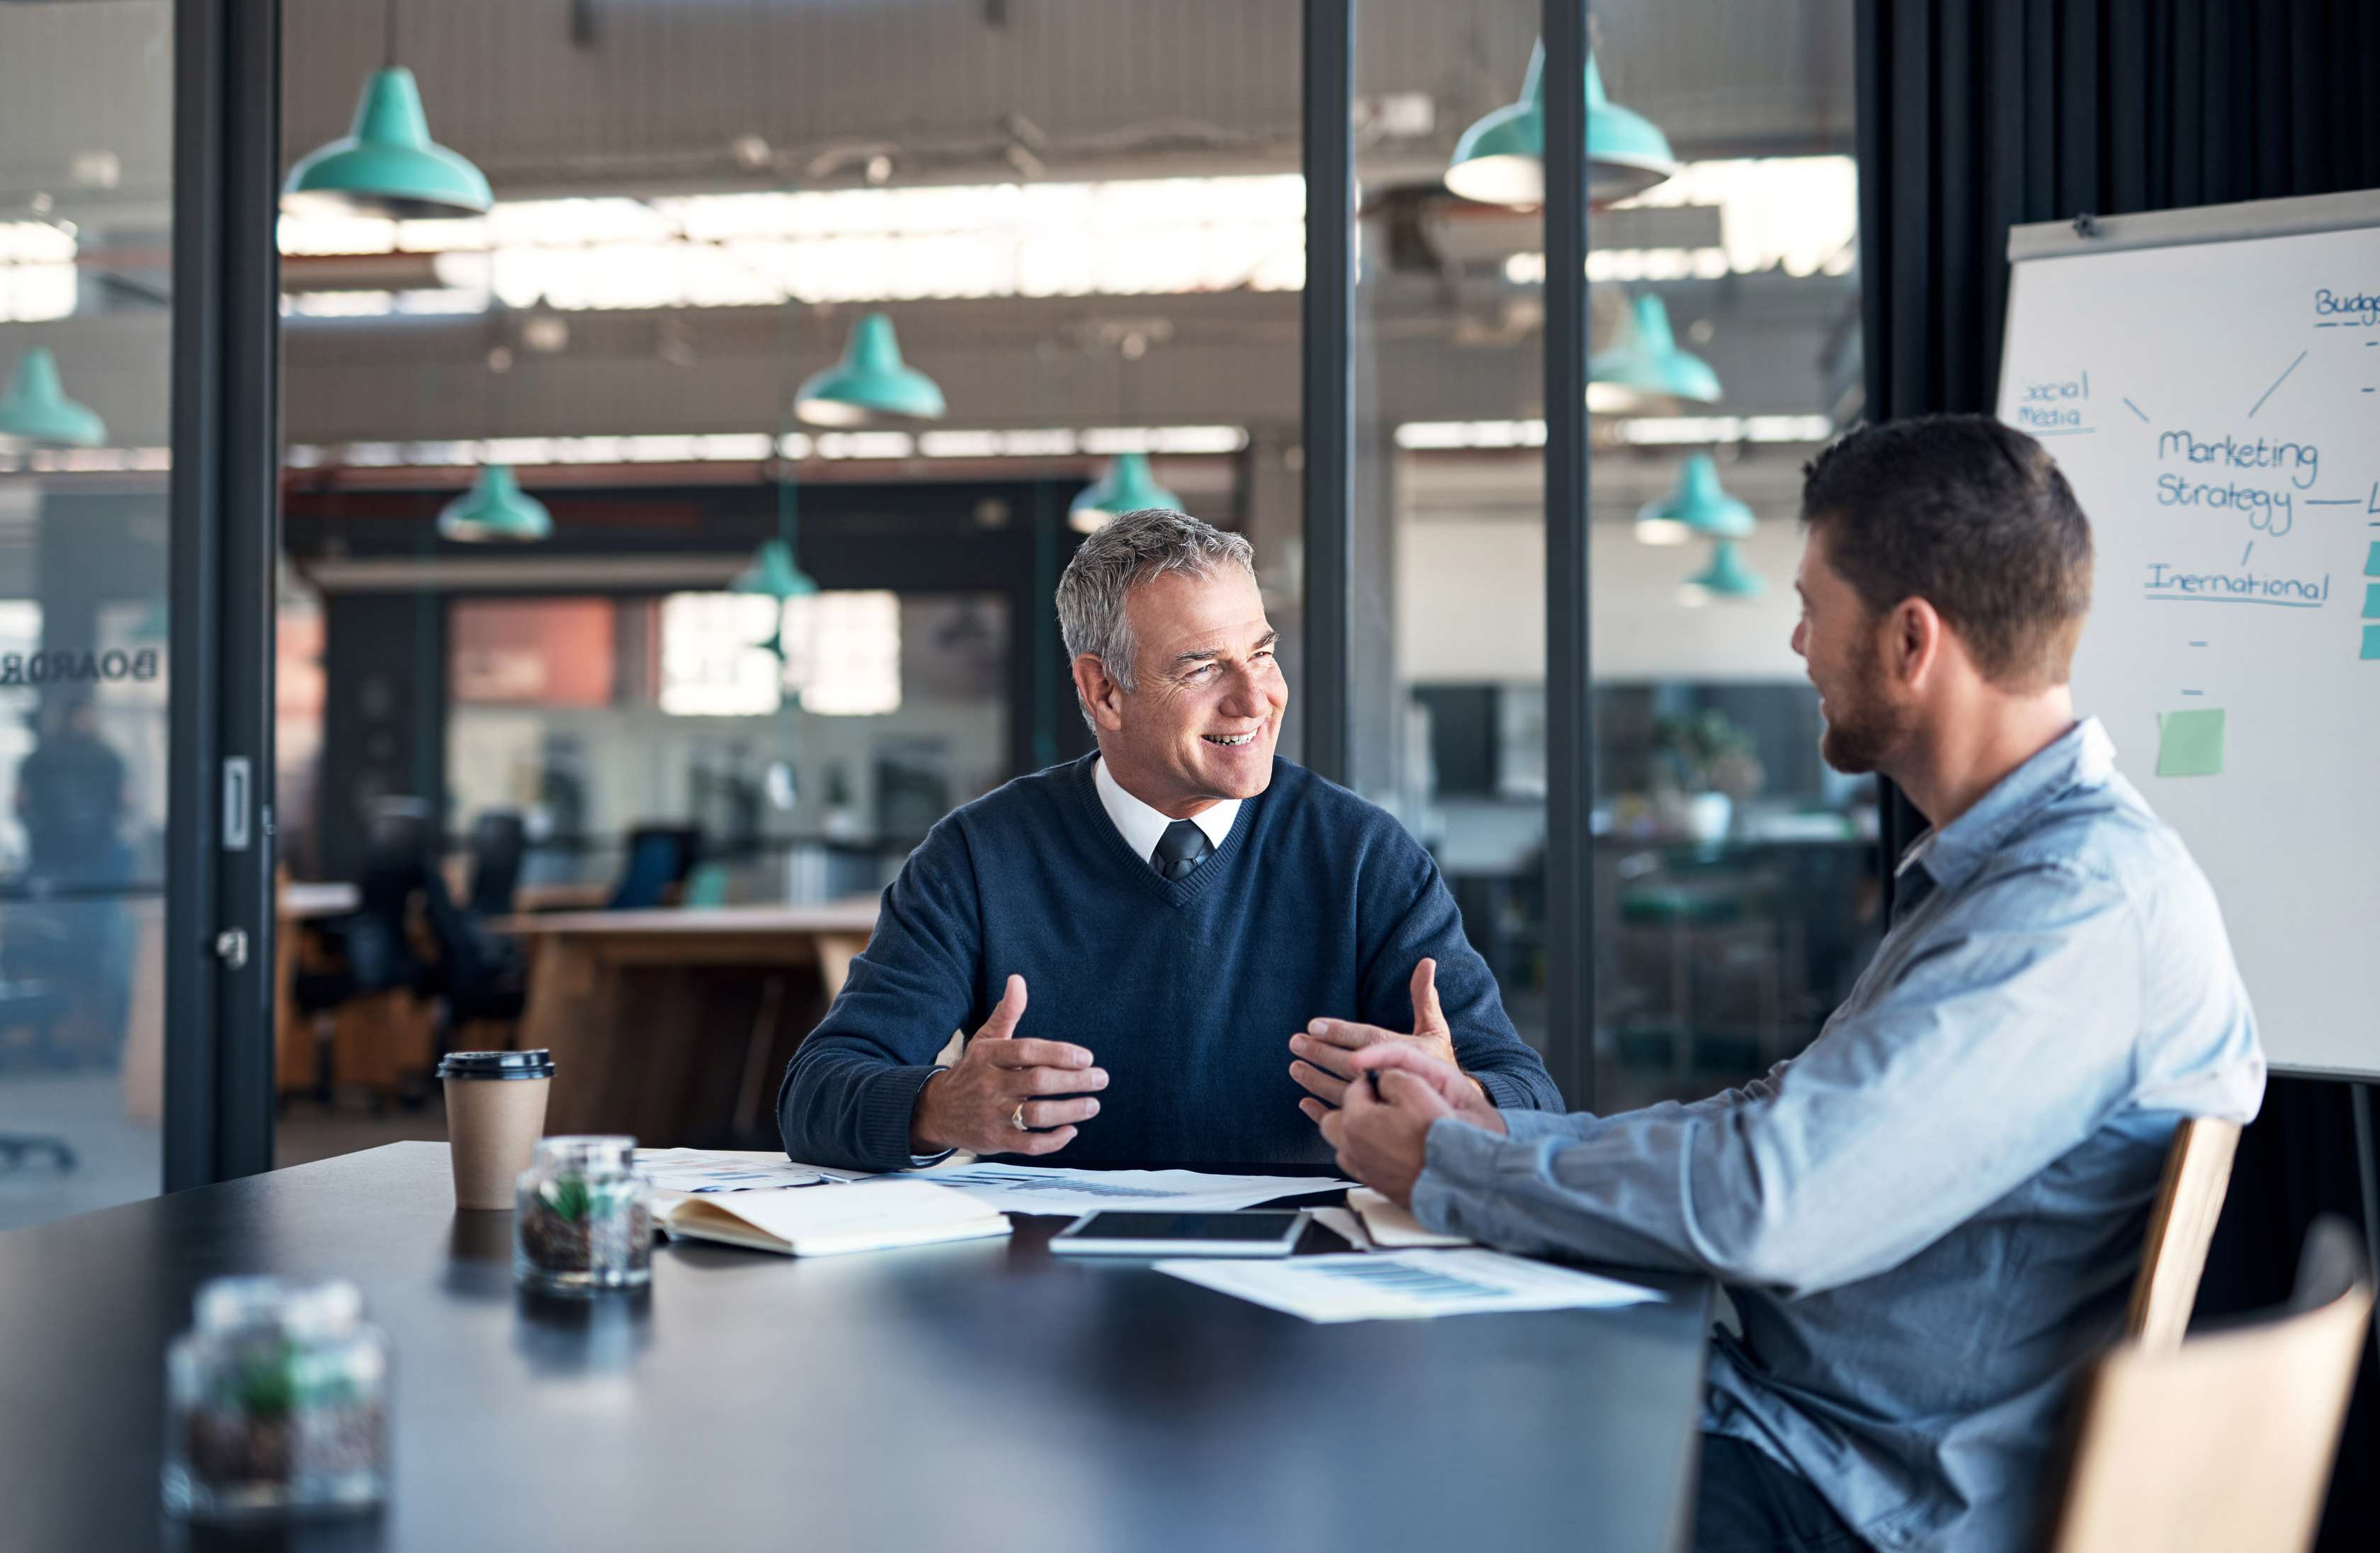 Zwei Männer sitzen am Konferenztisch und sprechen miteinander, hinter ihnen ein Chart mit einer Marketingstrategie